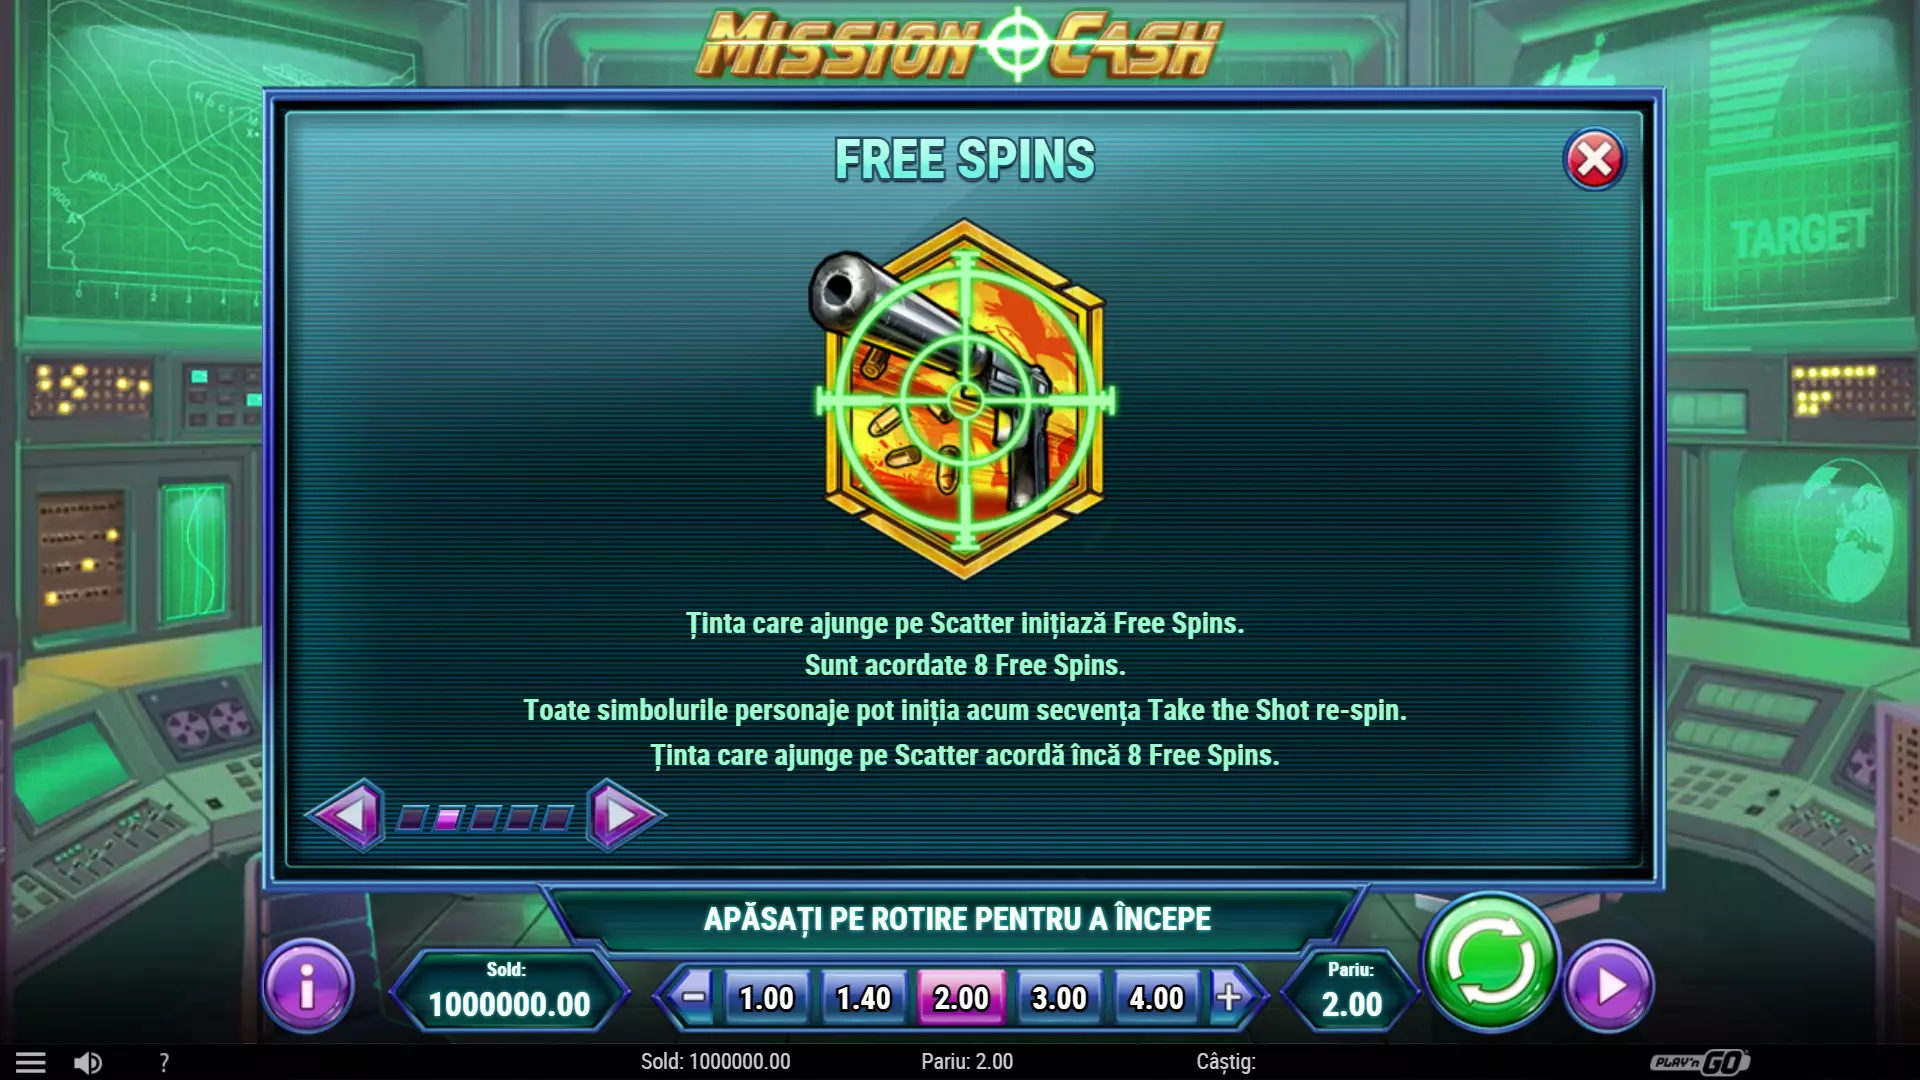 Sloturi demo Mission Cash